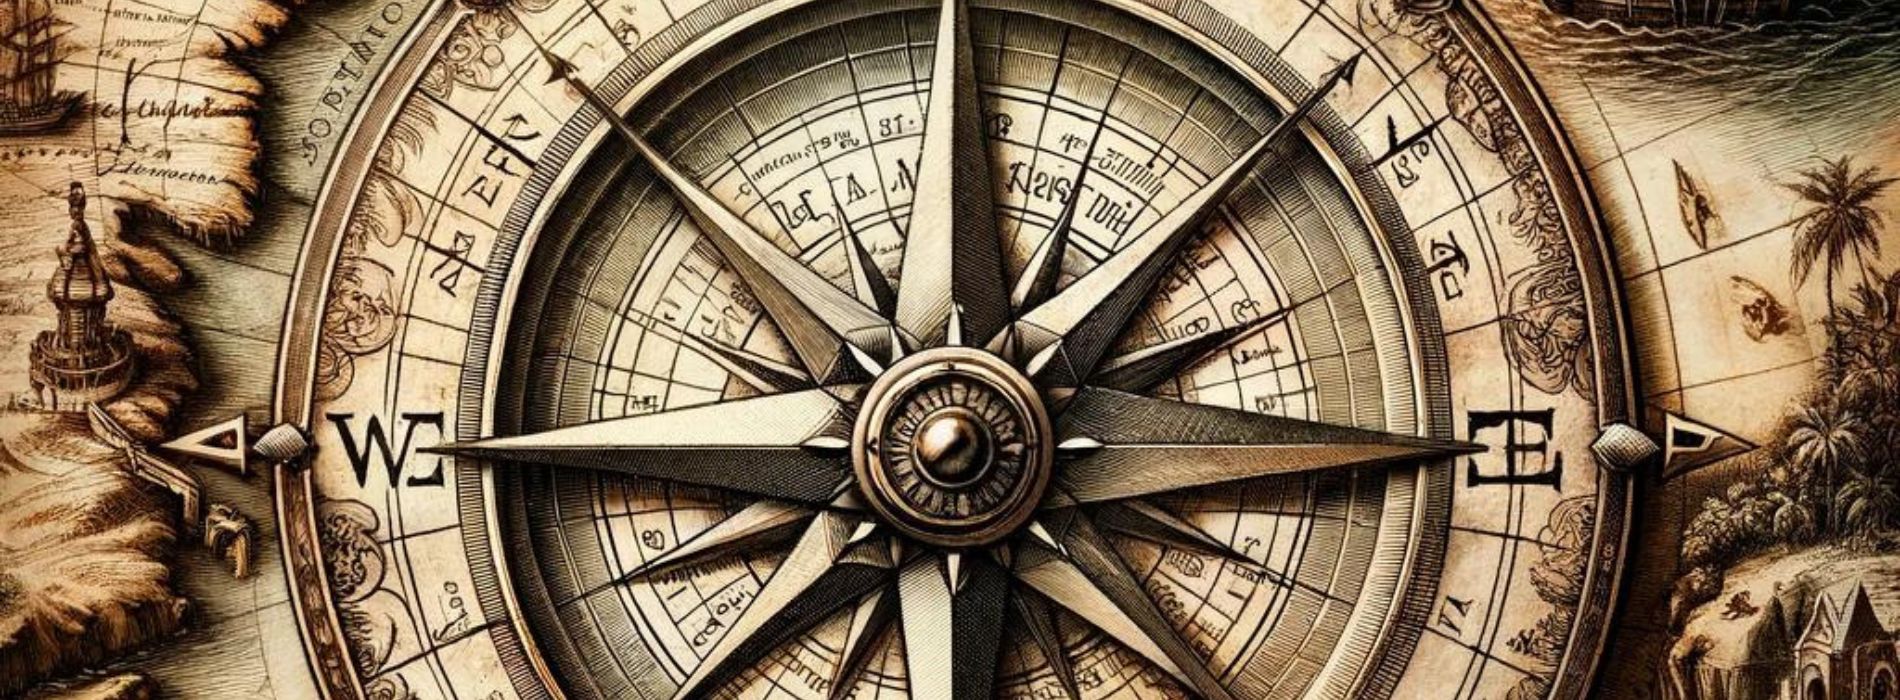 Eine komplizierte Kompassrose, die auf einer antiken Karte eingraviert ist